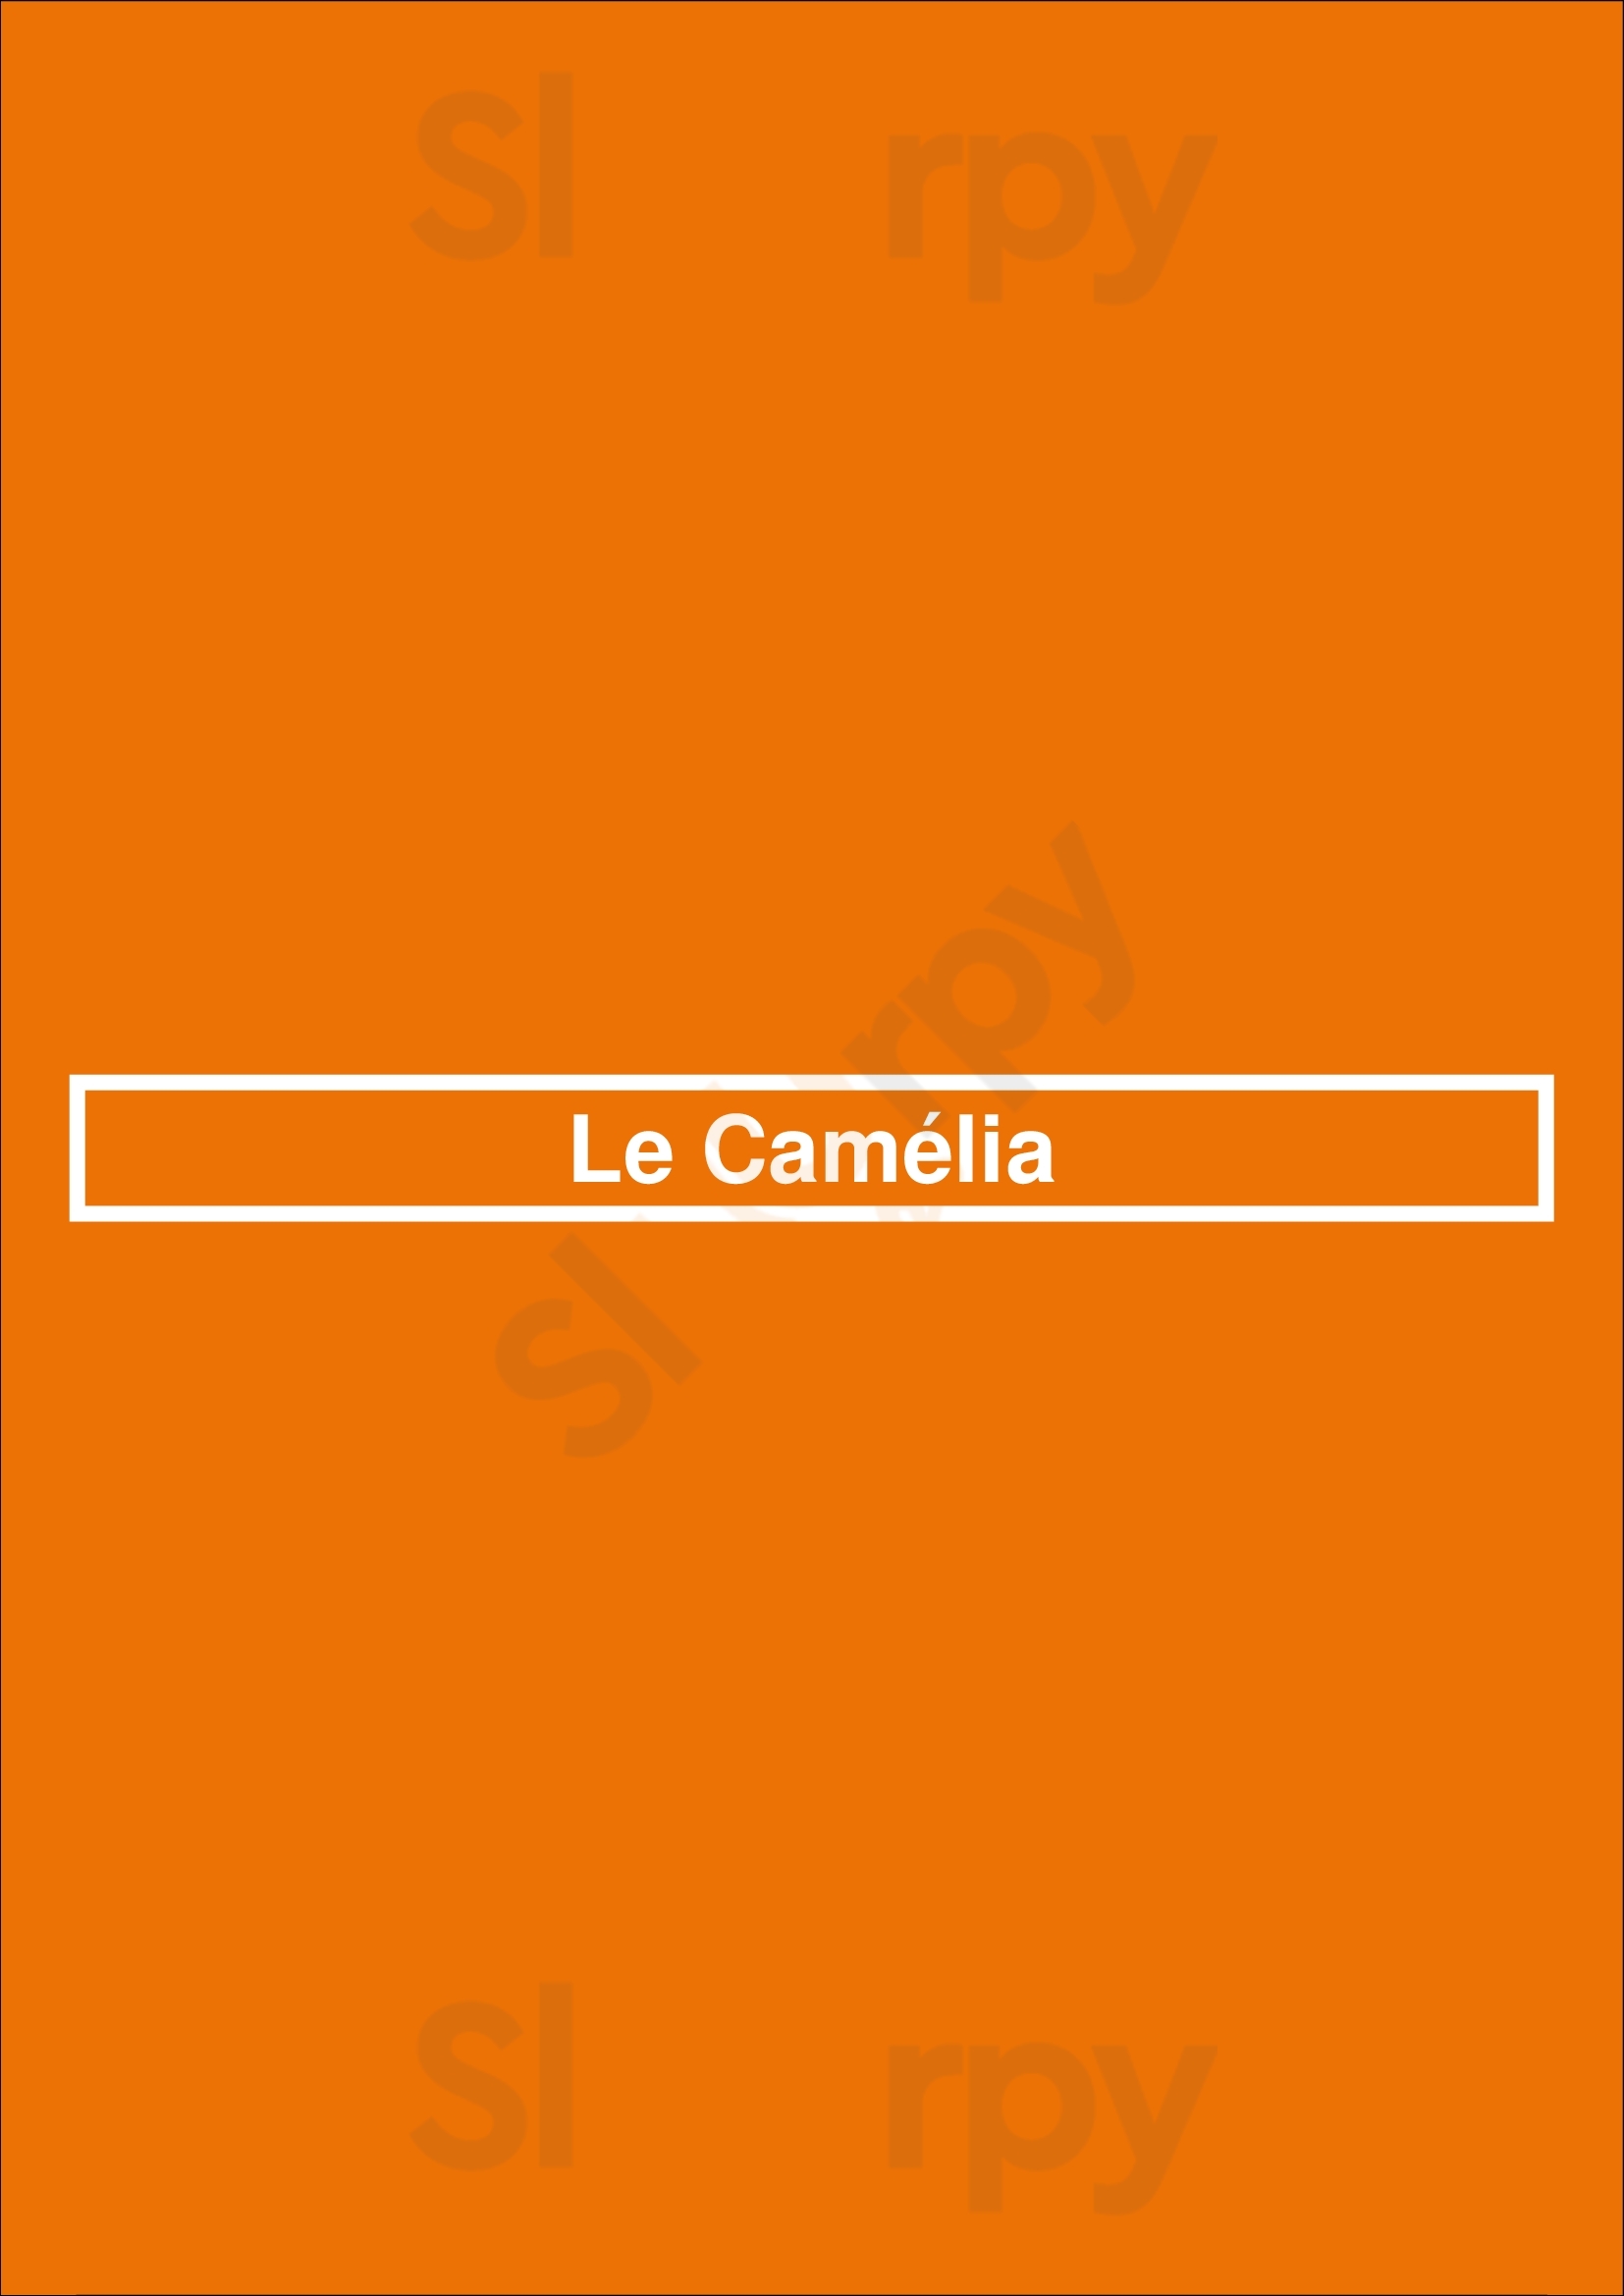 Le Camélia Woluwe-Saint-Lambert Menu - 1